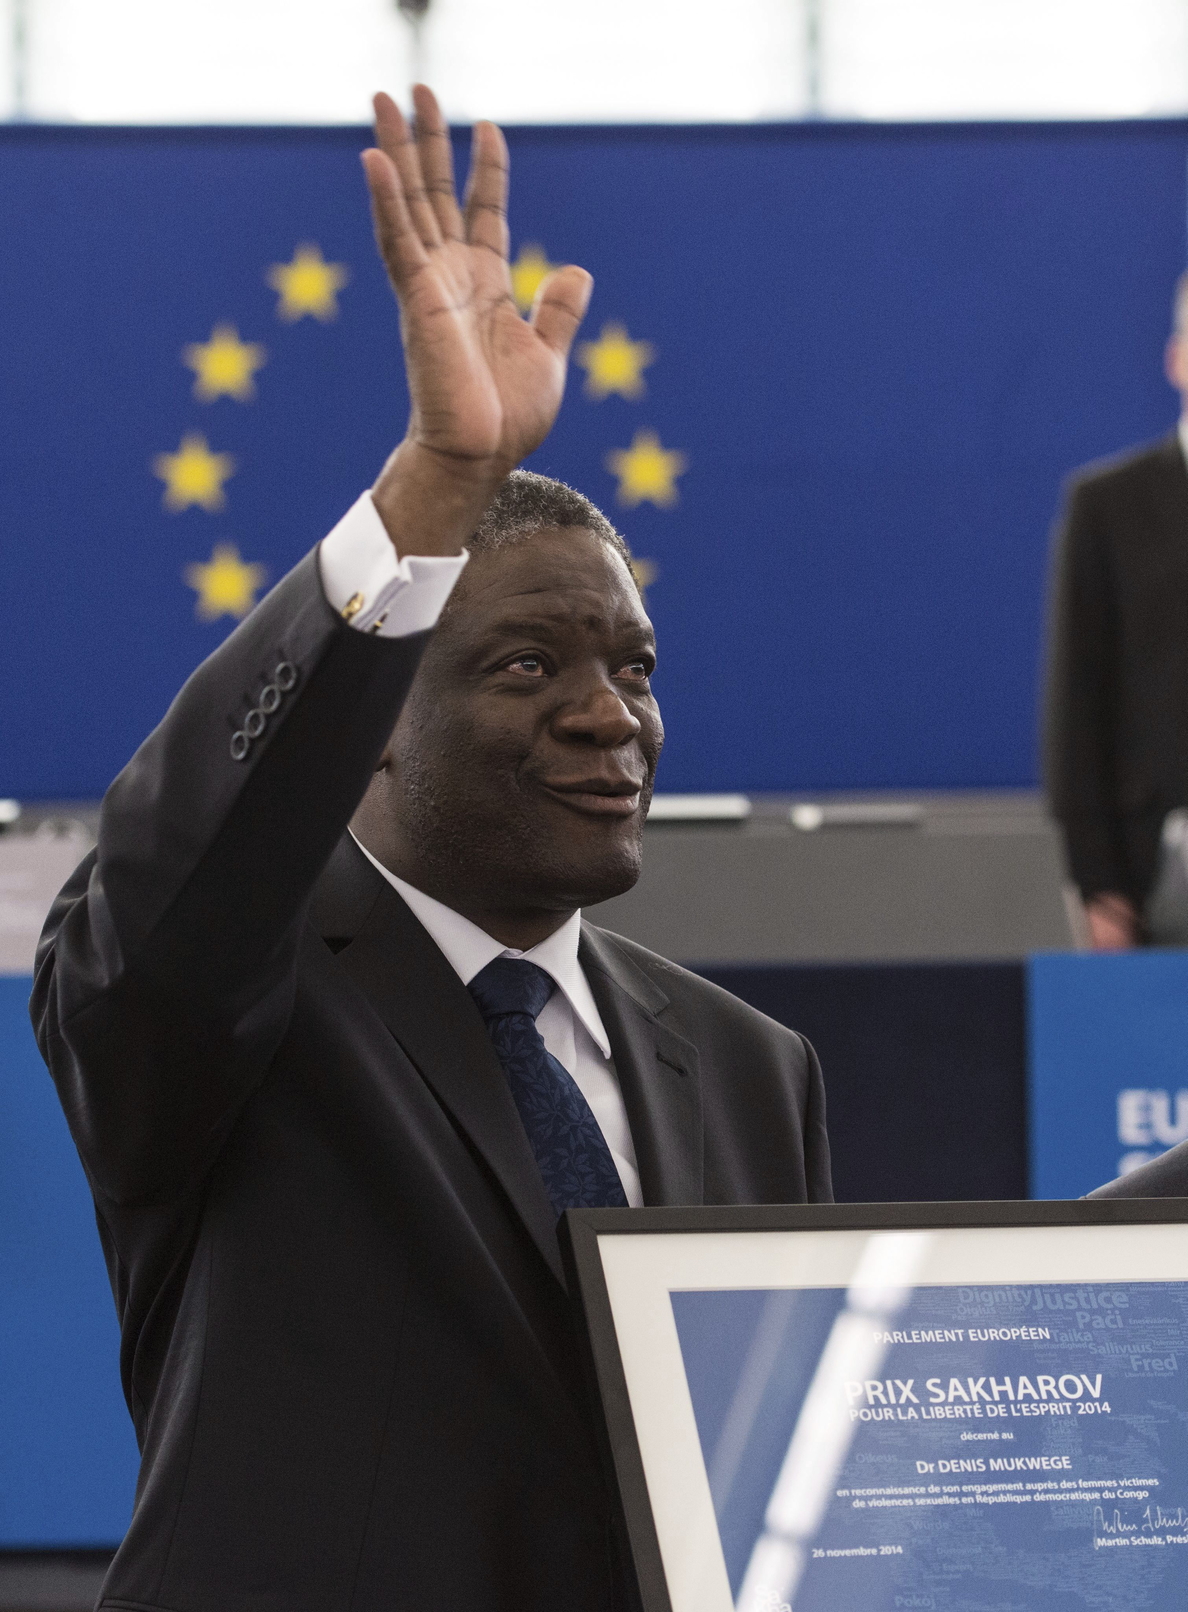 Mukwege reclama un tribunal internacional para las violaciones en la RD del Congo